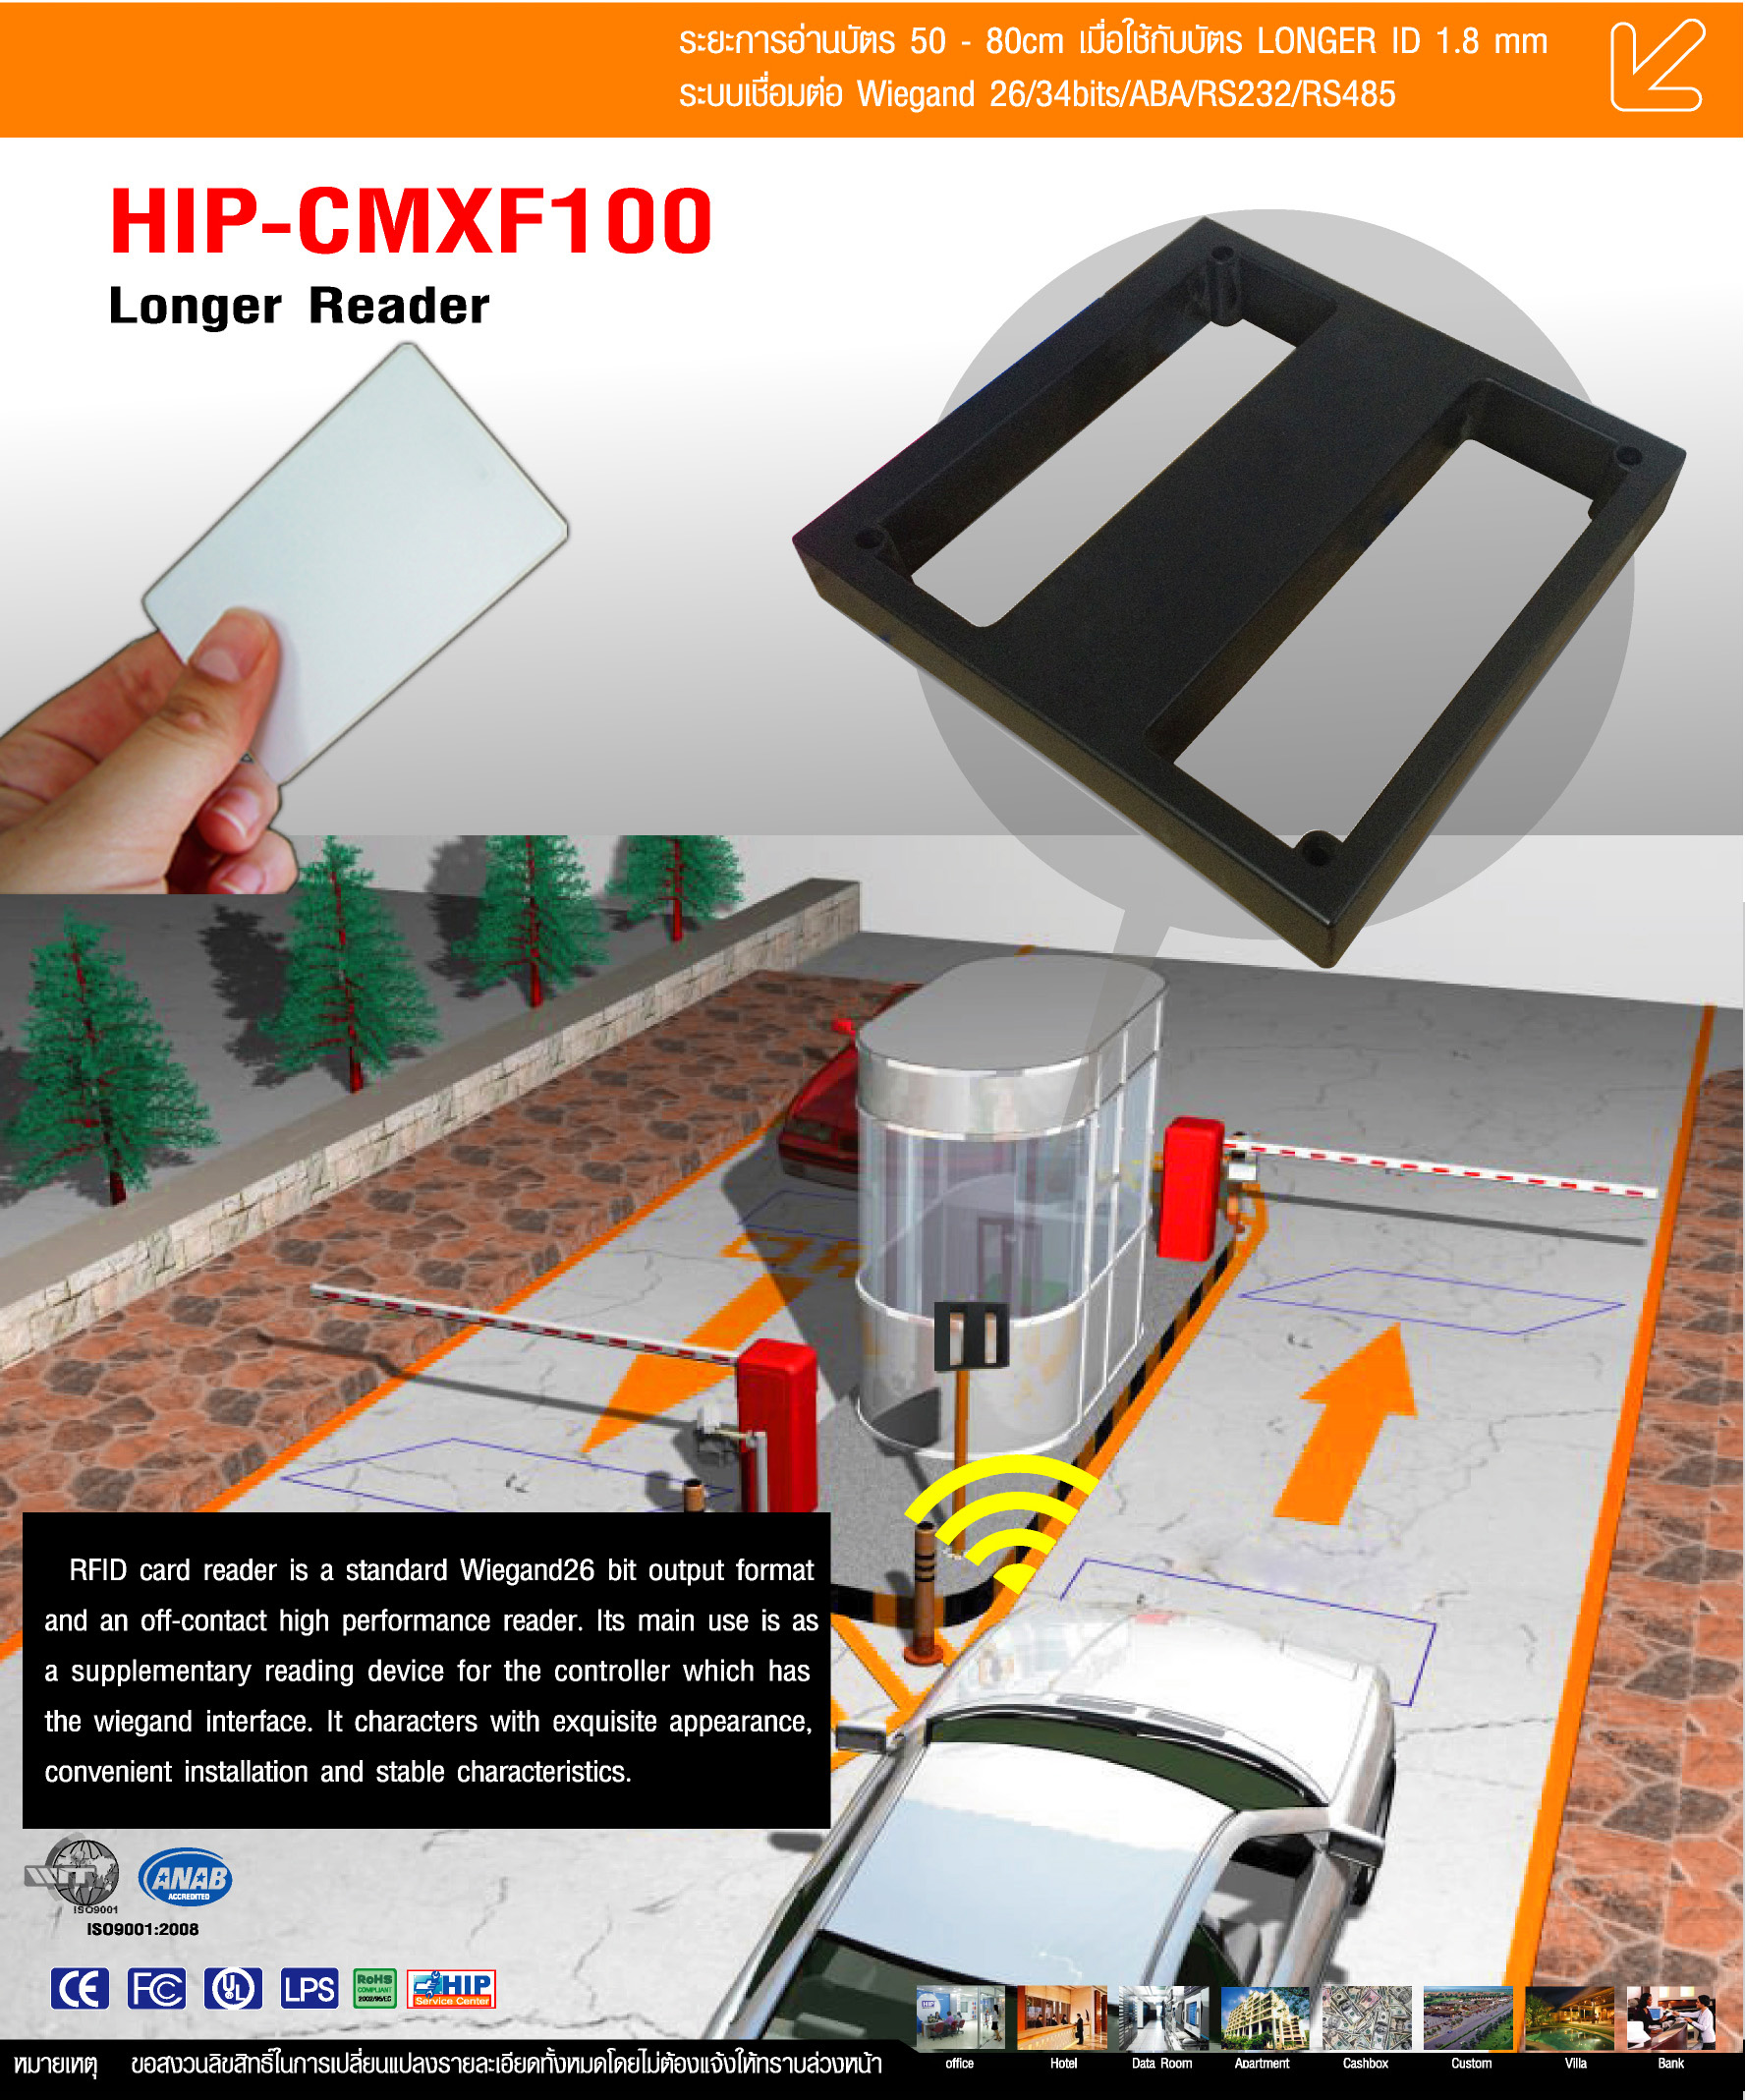 ไม้กั้นรถยนต์เข้าออก ระบบทาบบัตรระยะใกล้ HIP-CMXF100